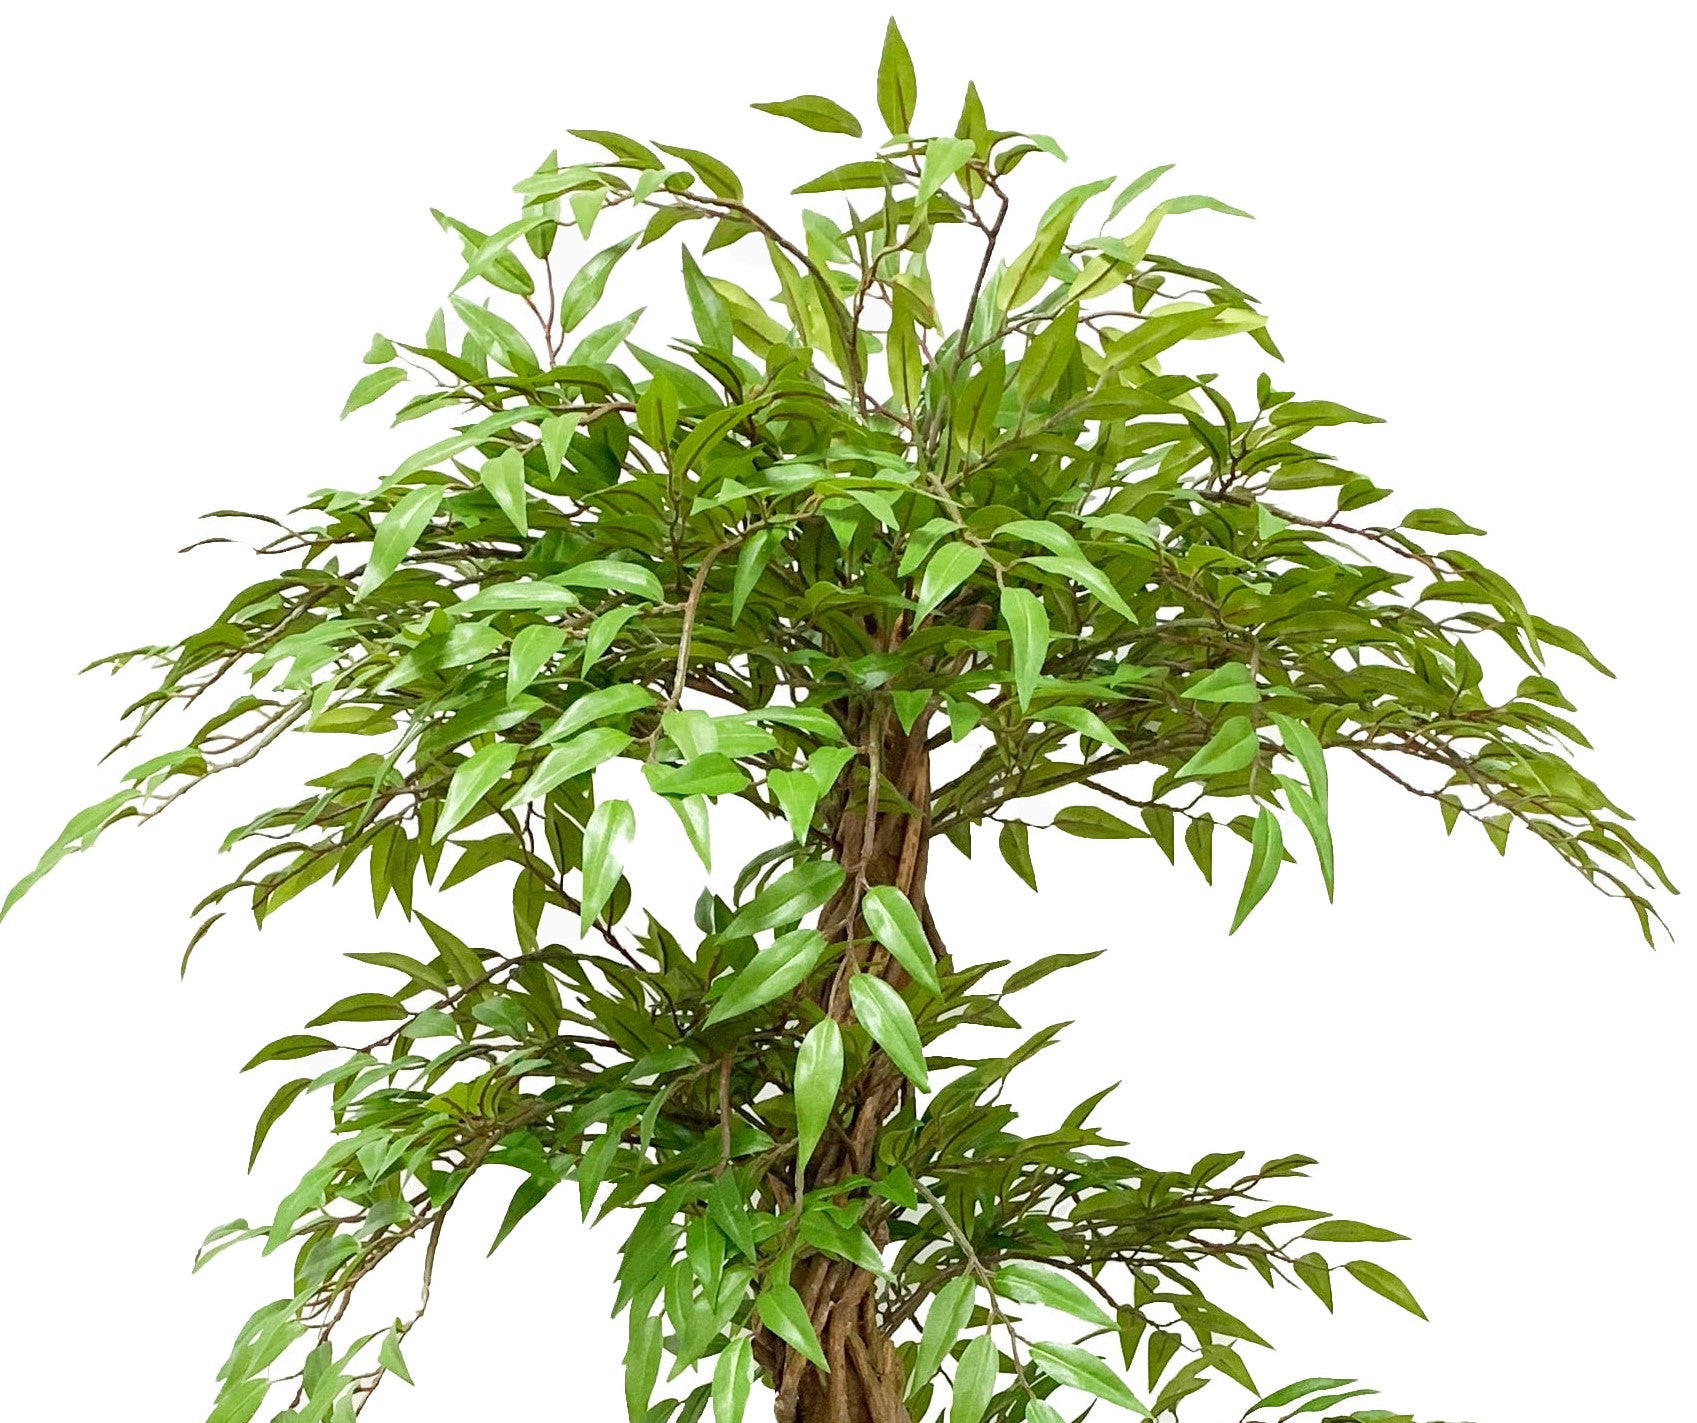 Ficus Trenzado Con Filtro Uv (160 Cm)